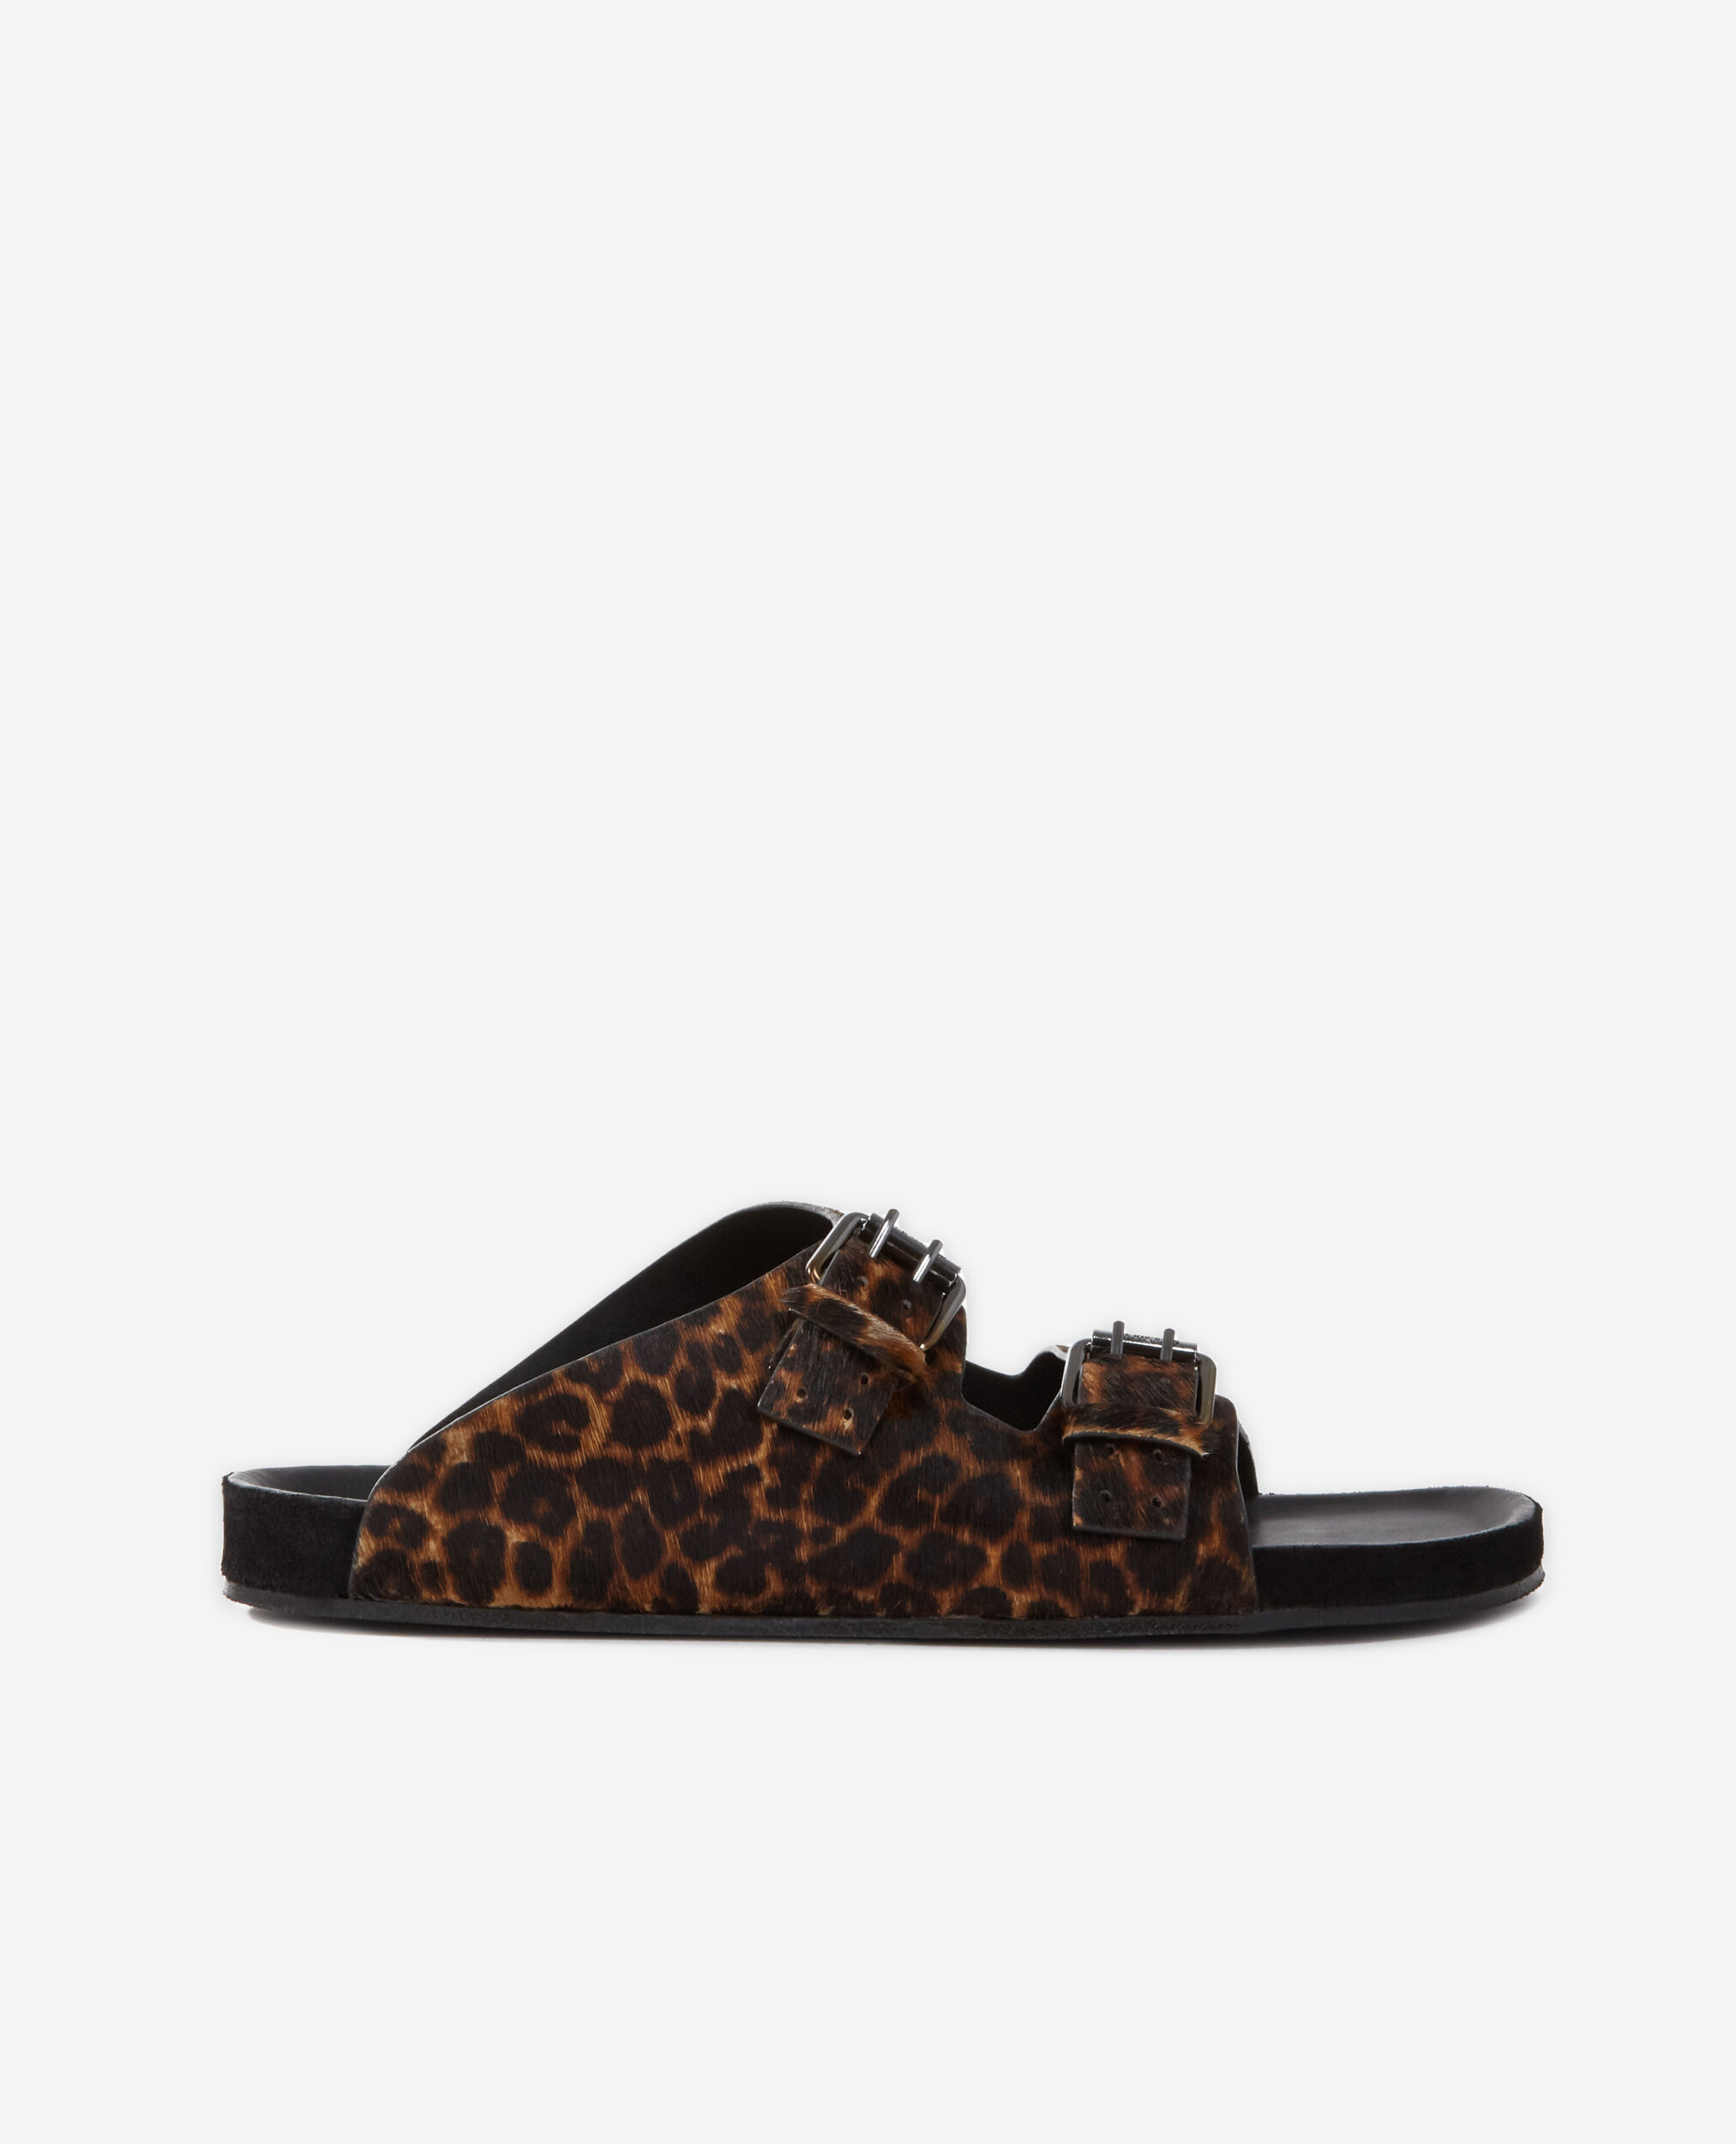 Sandales en cuir léopard, LEOPARD, hi-res image number null